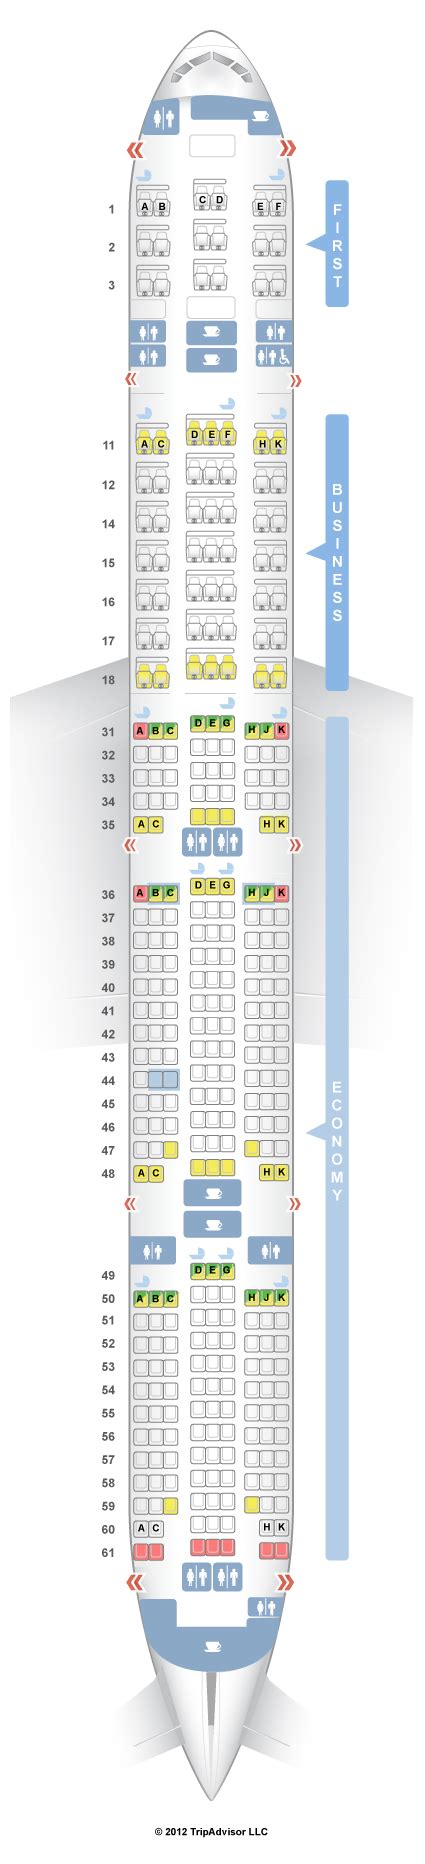 Seatguru Seat Map Singapore Airlines